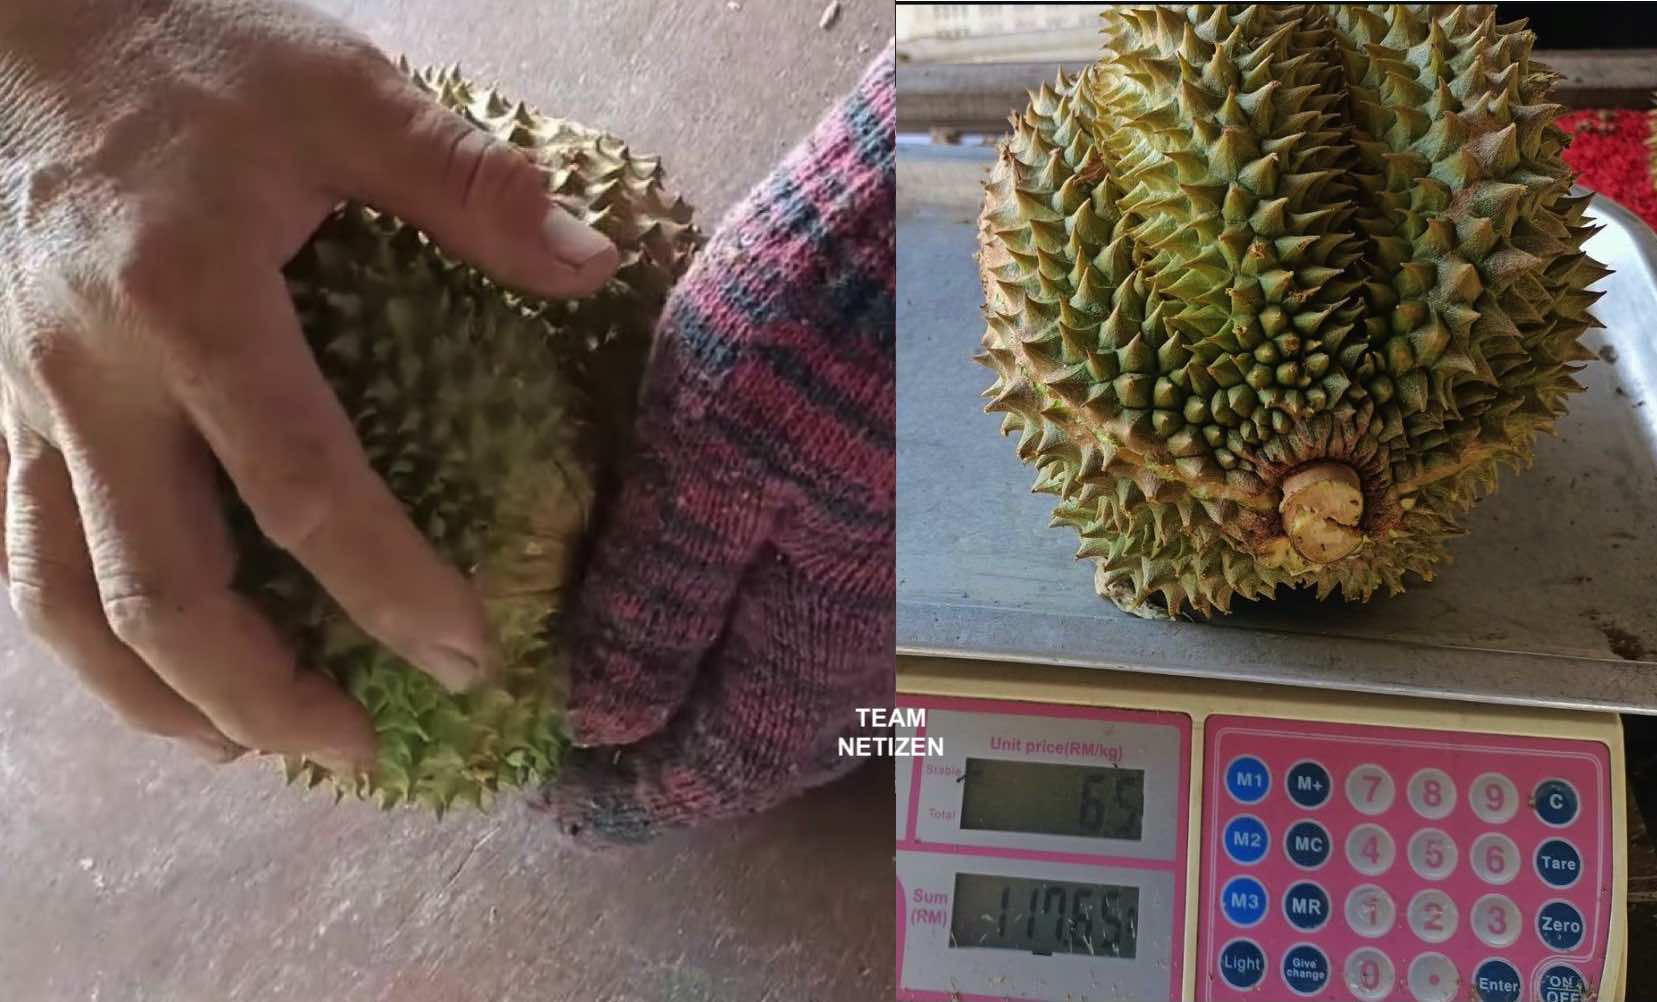 Beli Durian Premium 'Black Thorn' Harga RM117, Lelaki Tergaman Melihat Isi Dalamnya - nangtime.com